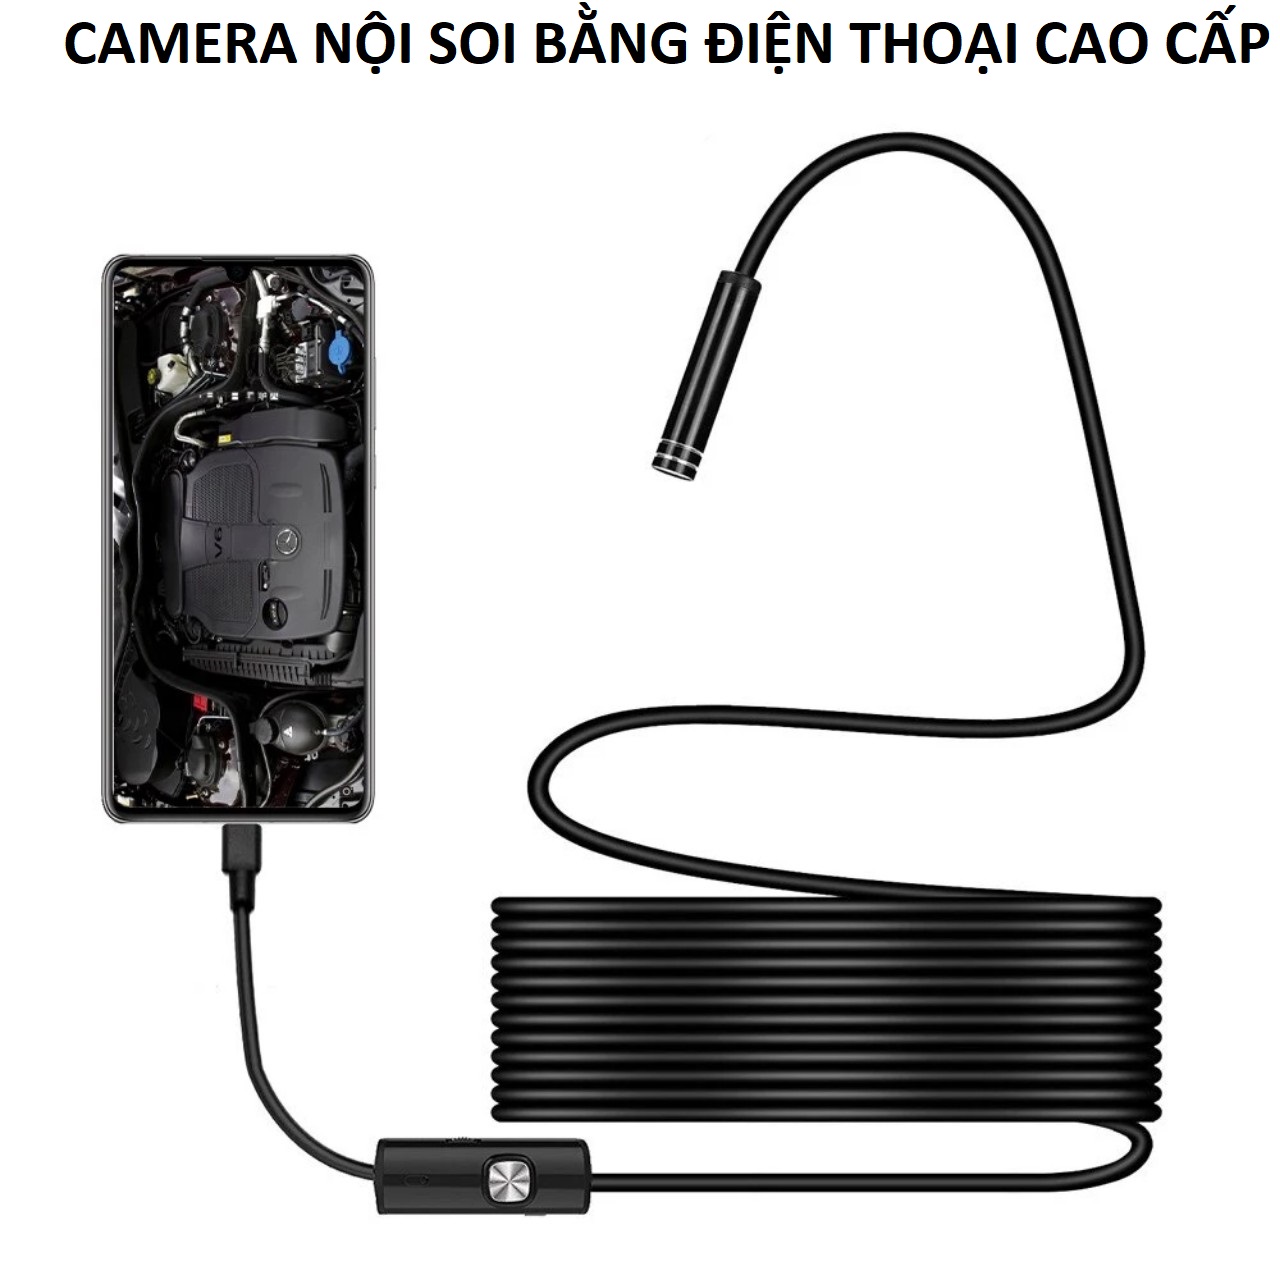 (Dài 2 mét) Camera nội soi tai, soi đồ vật 6led cắm điện thoại 3in1 hàng cao cấp loại tốt